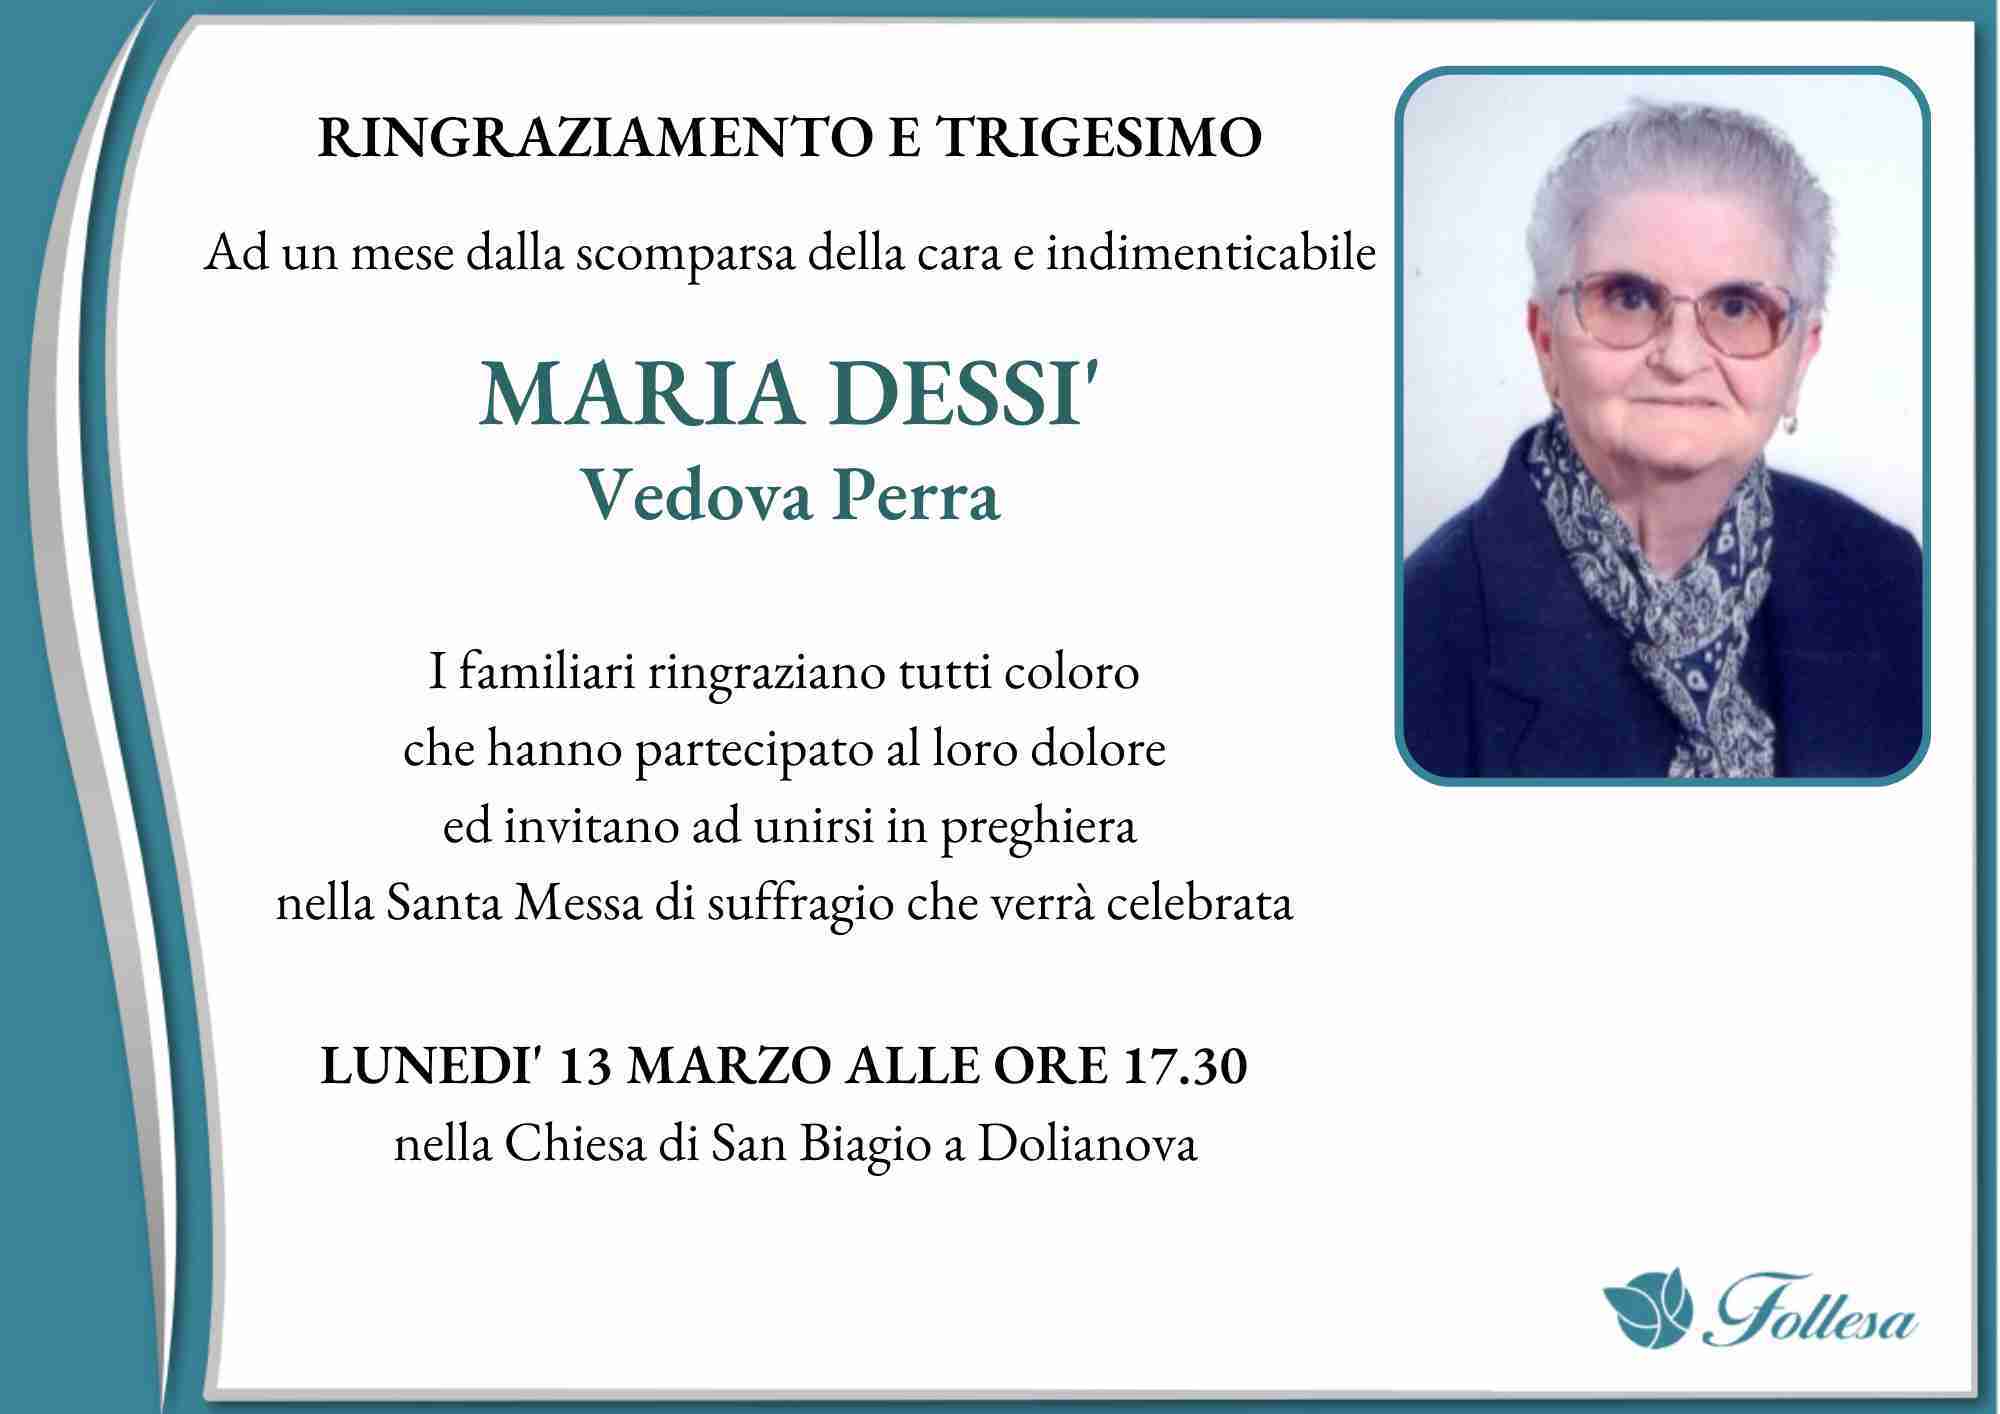 Maria Dessì